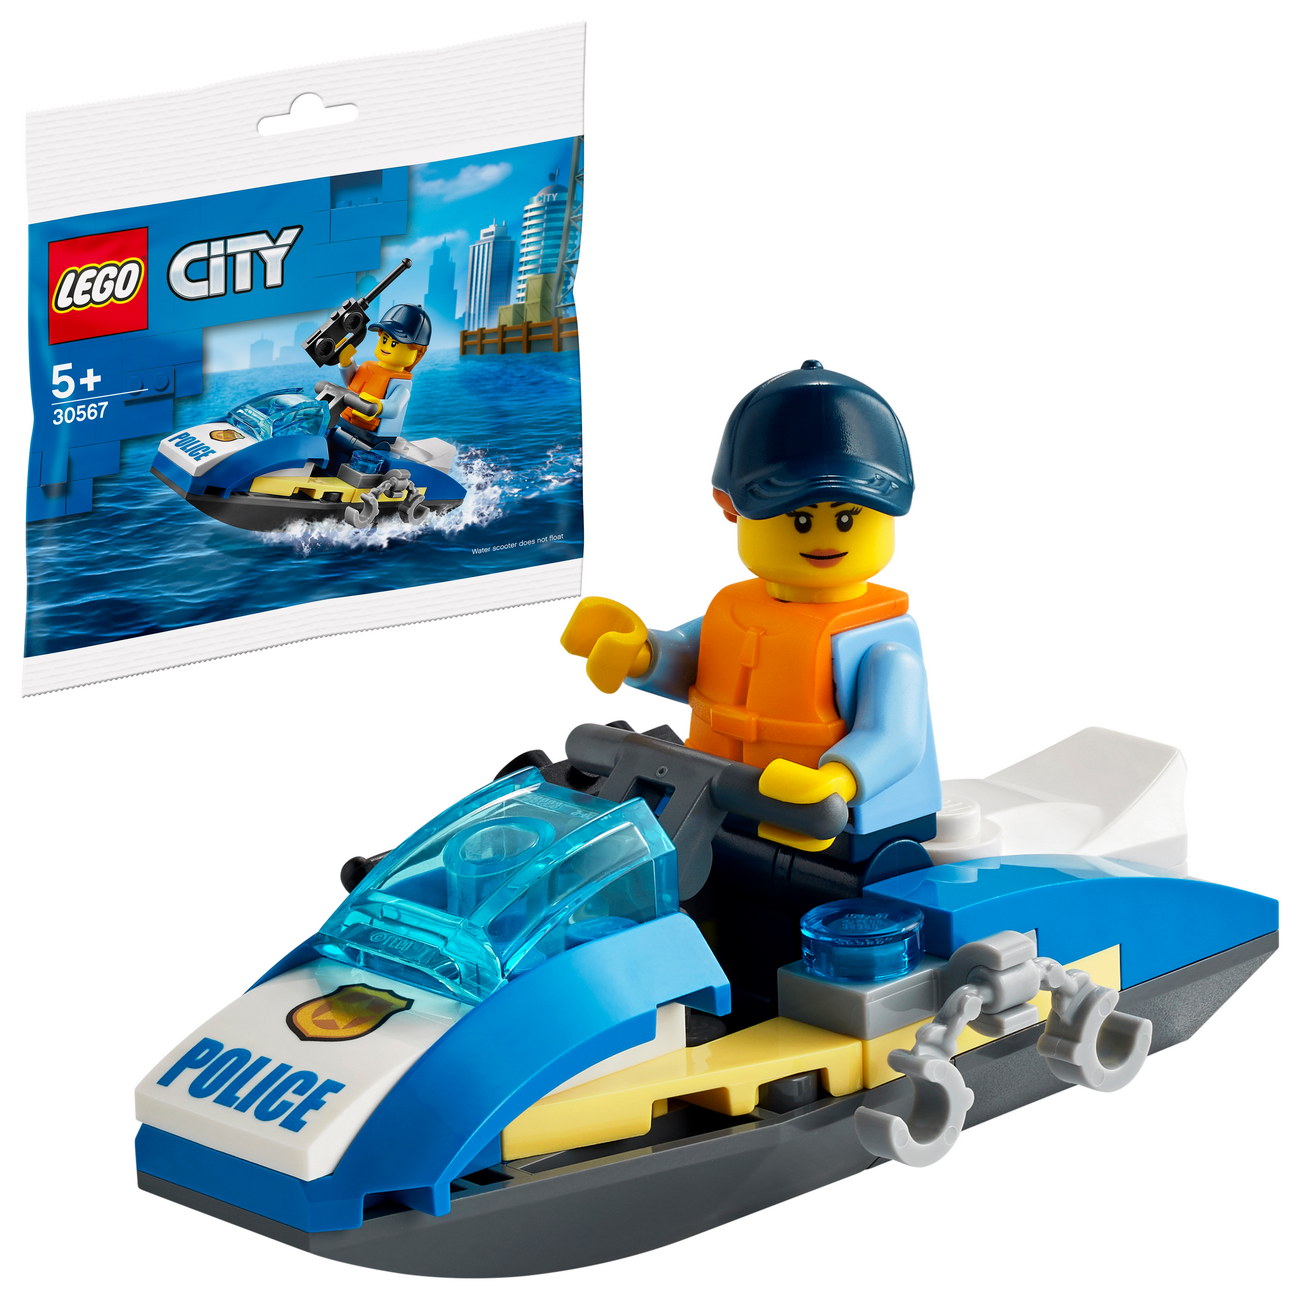 LEGO City 30567 - Polizei Jetski